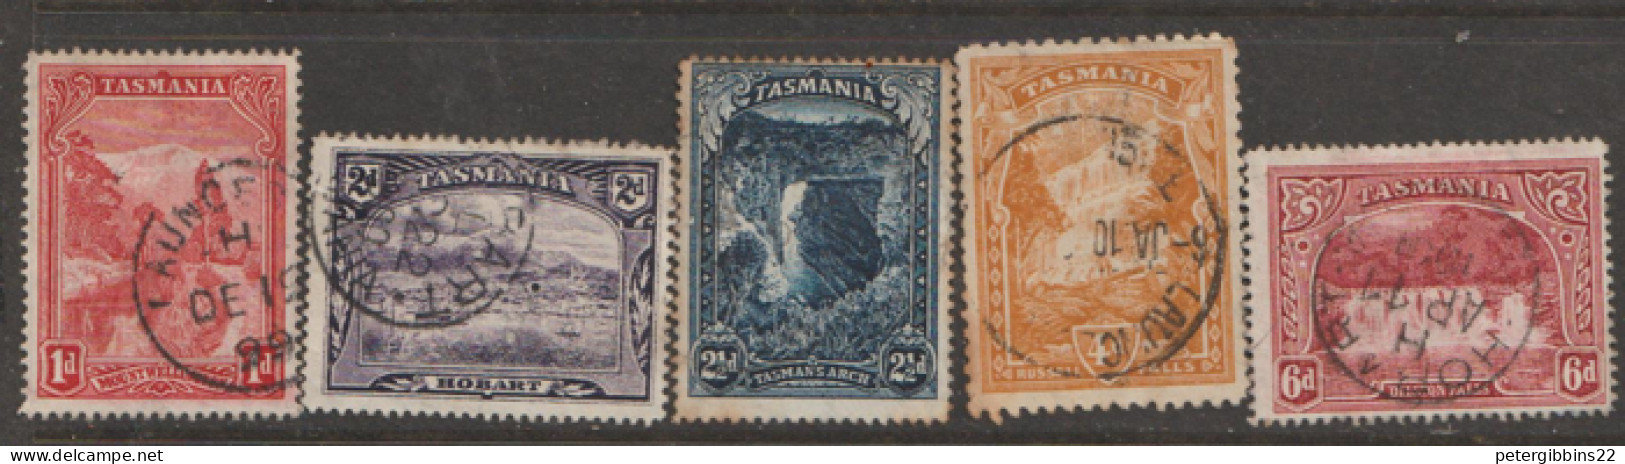 Tasmania  1899  Various Values    Fine Used - Oblitérés